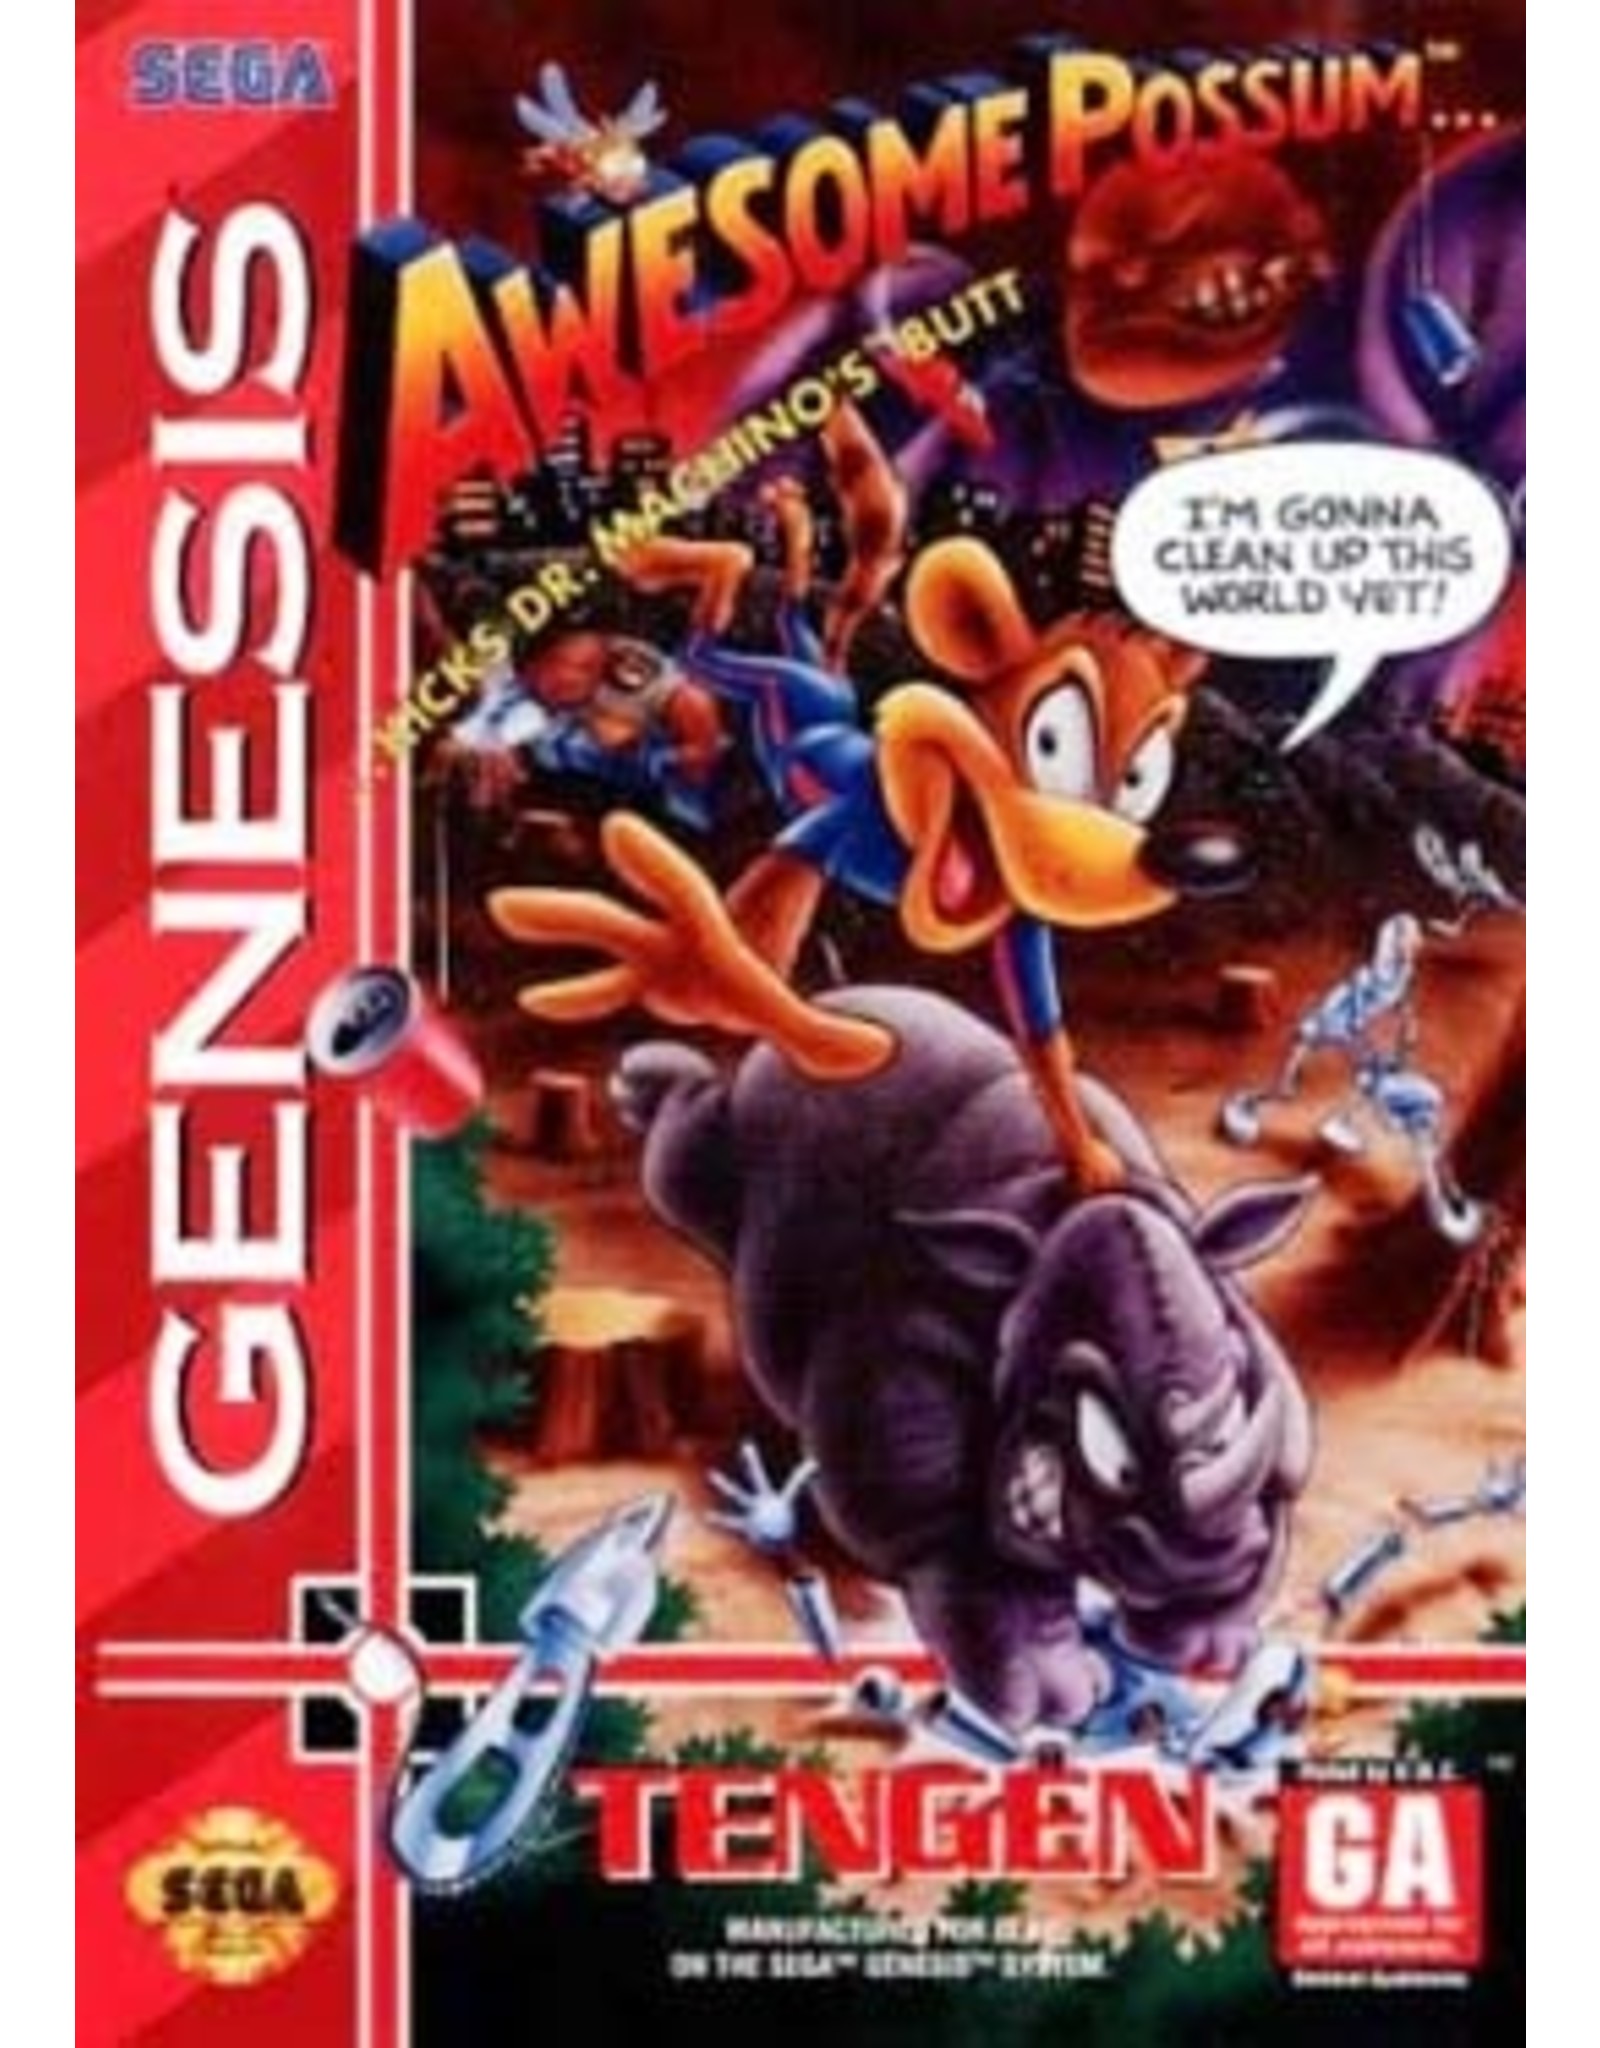 Sega Genesis Awesome Possum (CiB)